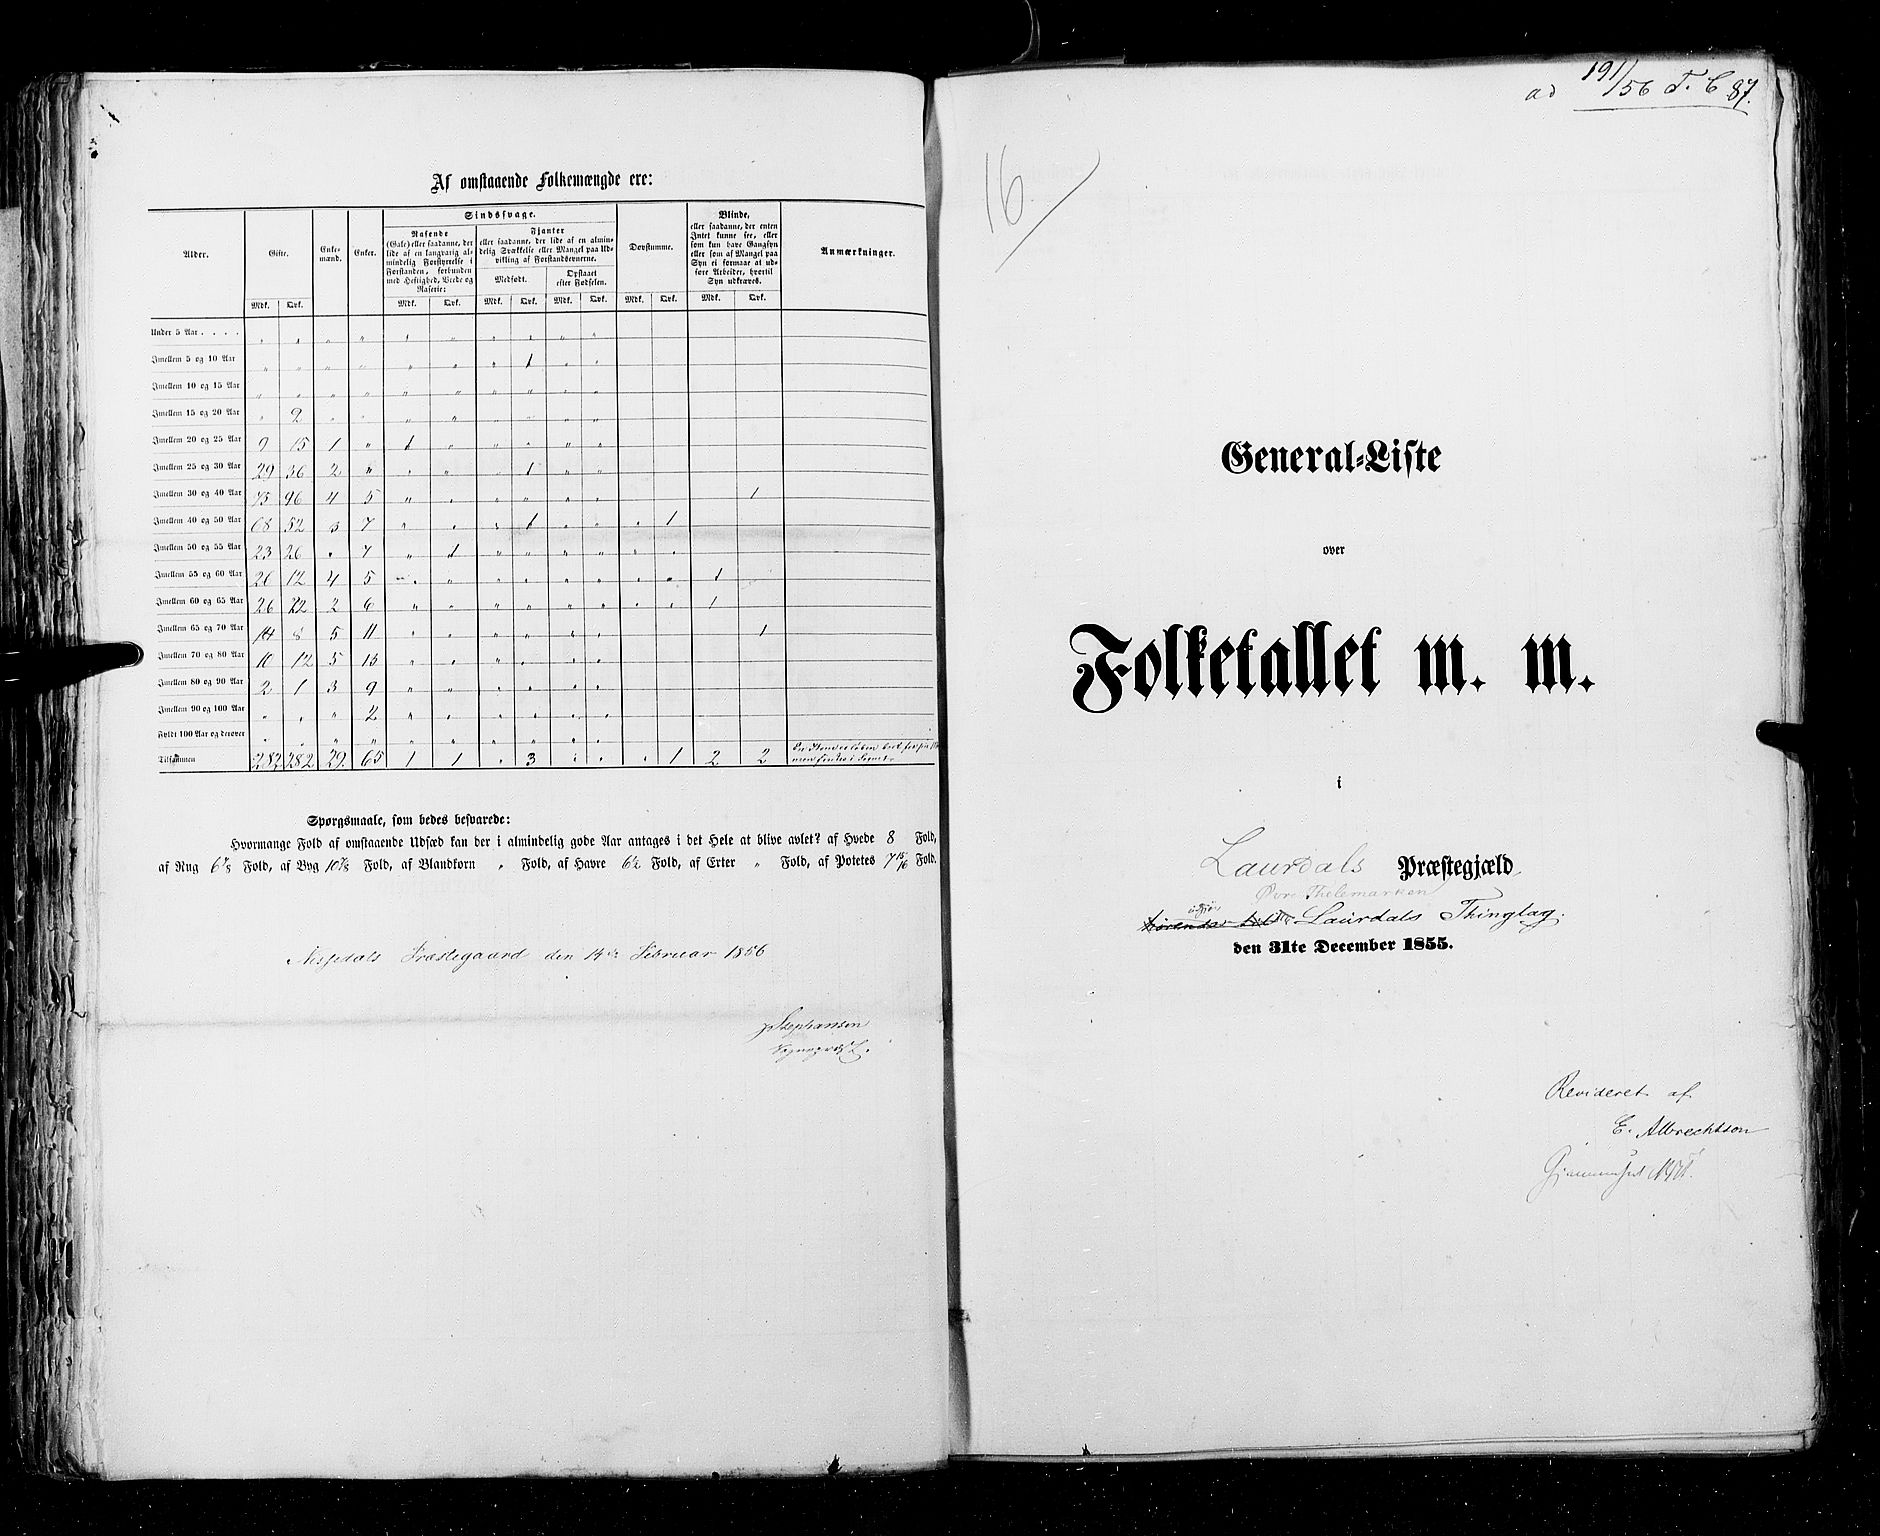 RA, Census 1855, vol. 3: Bratsberg amt, Nedenes amt og Lister og Mandal amt, 1855, p. 87